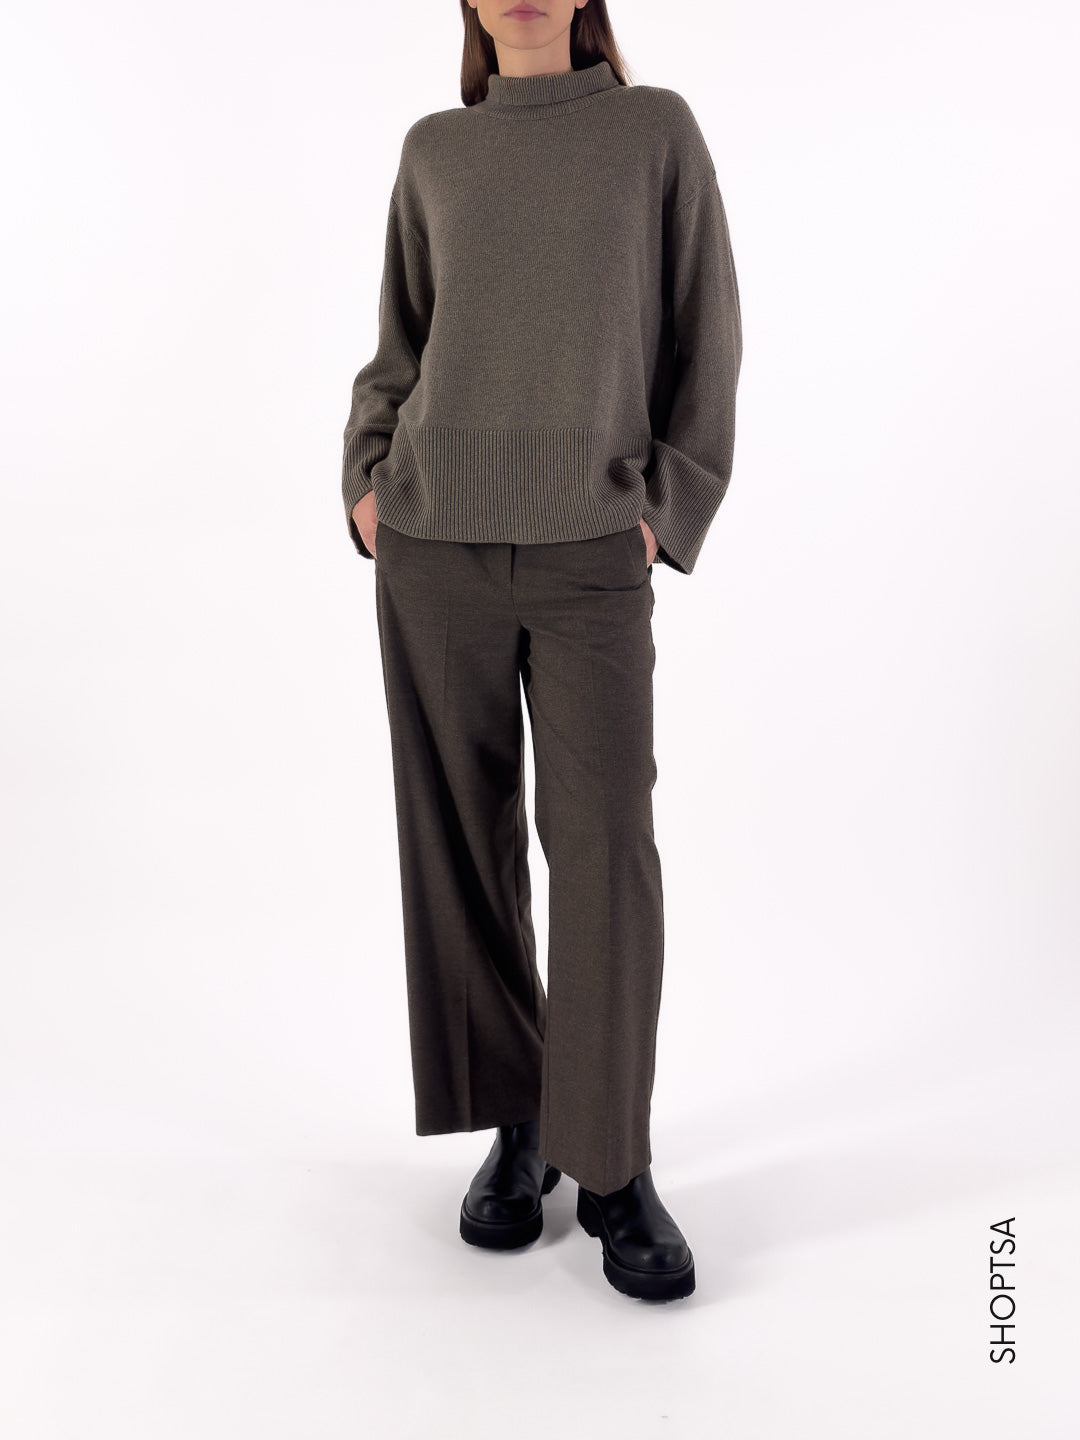 Dove gray turtleneck sweater 77251r - ViCOLO